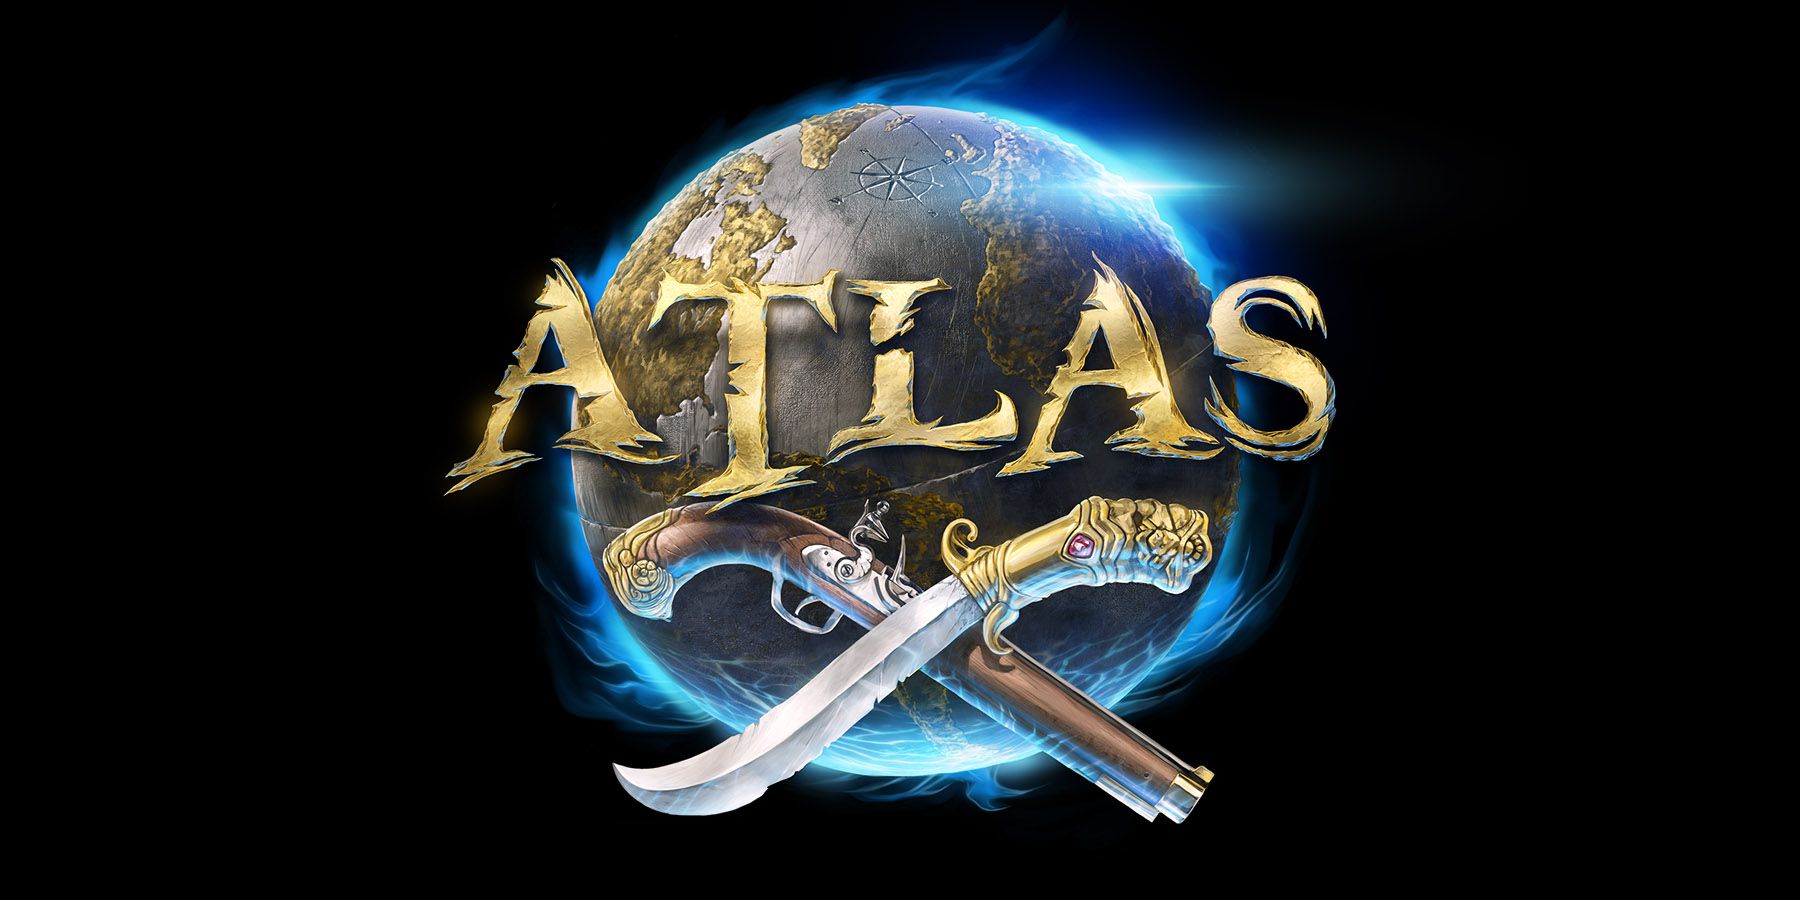 Map Atlas Game 